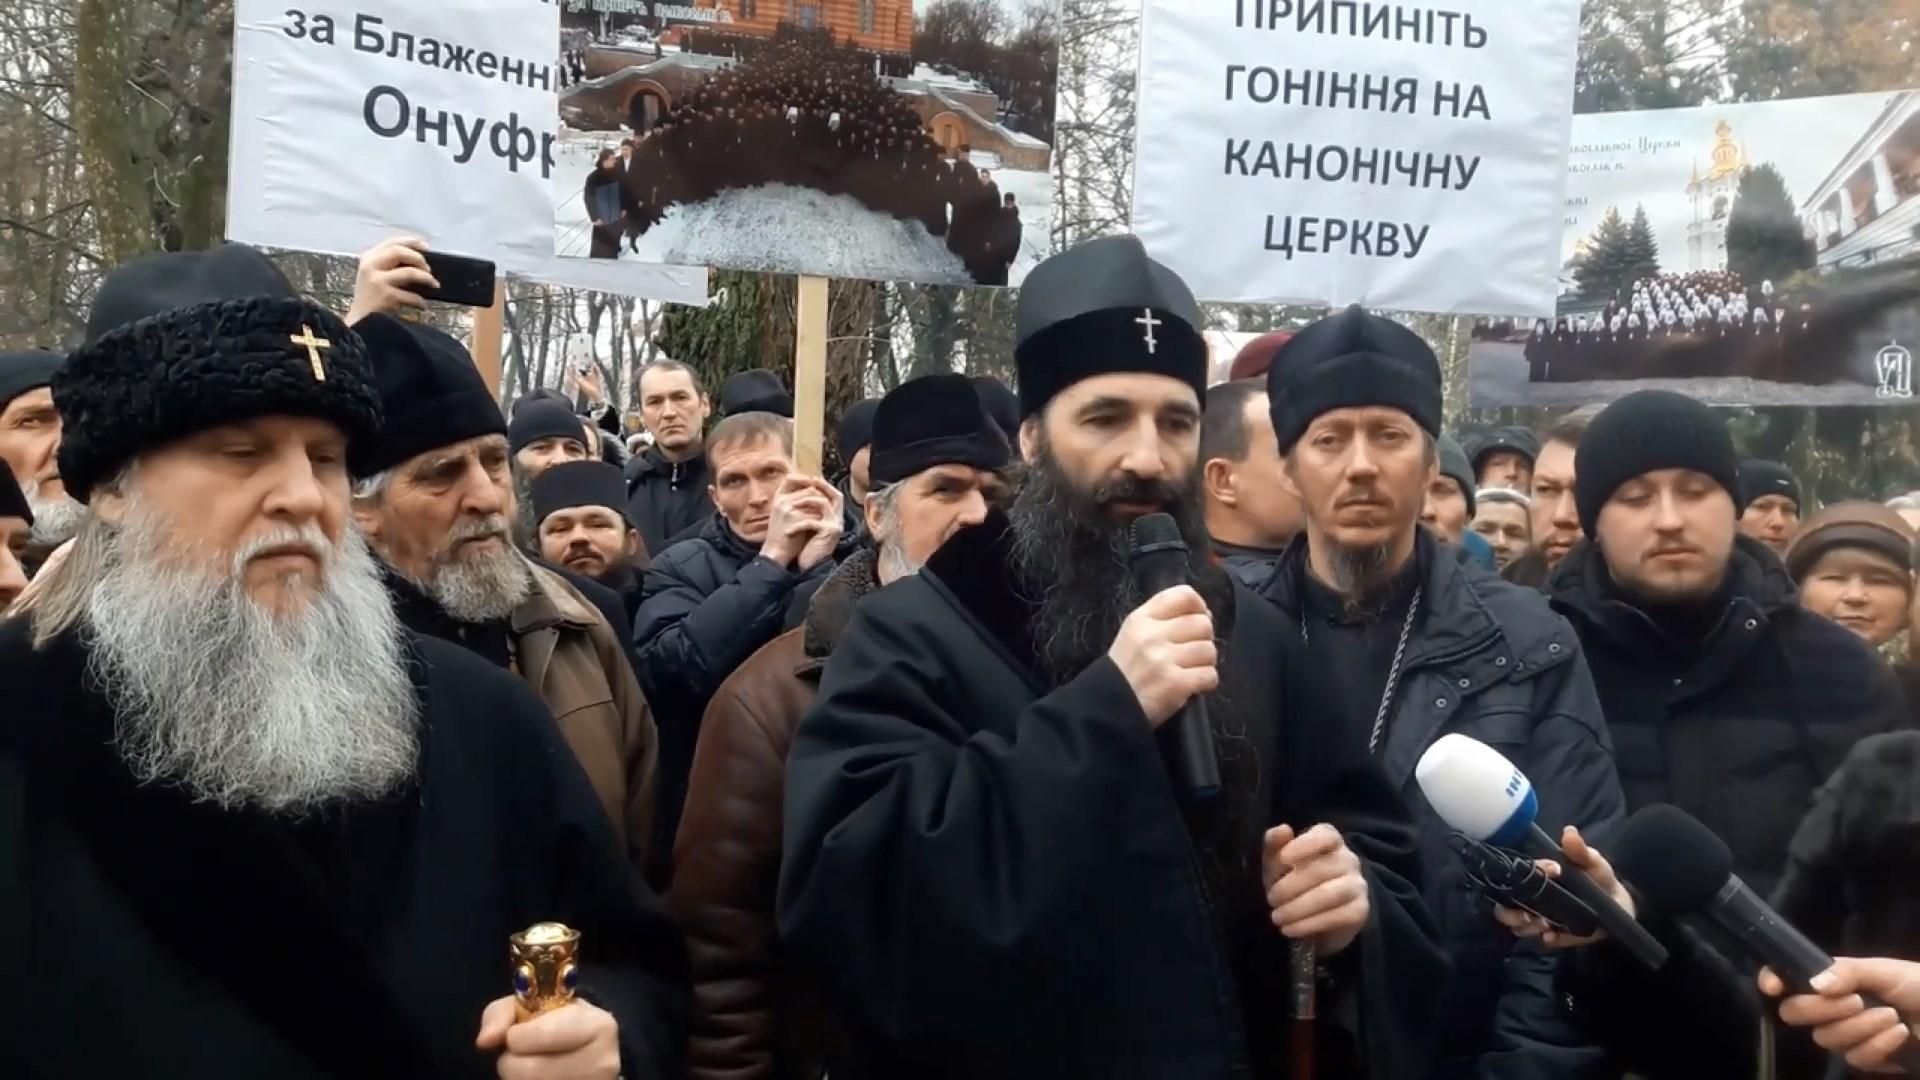 Митрополит ПЦУ подав до суду на Онуфрія: московські попи влаштували мітинг